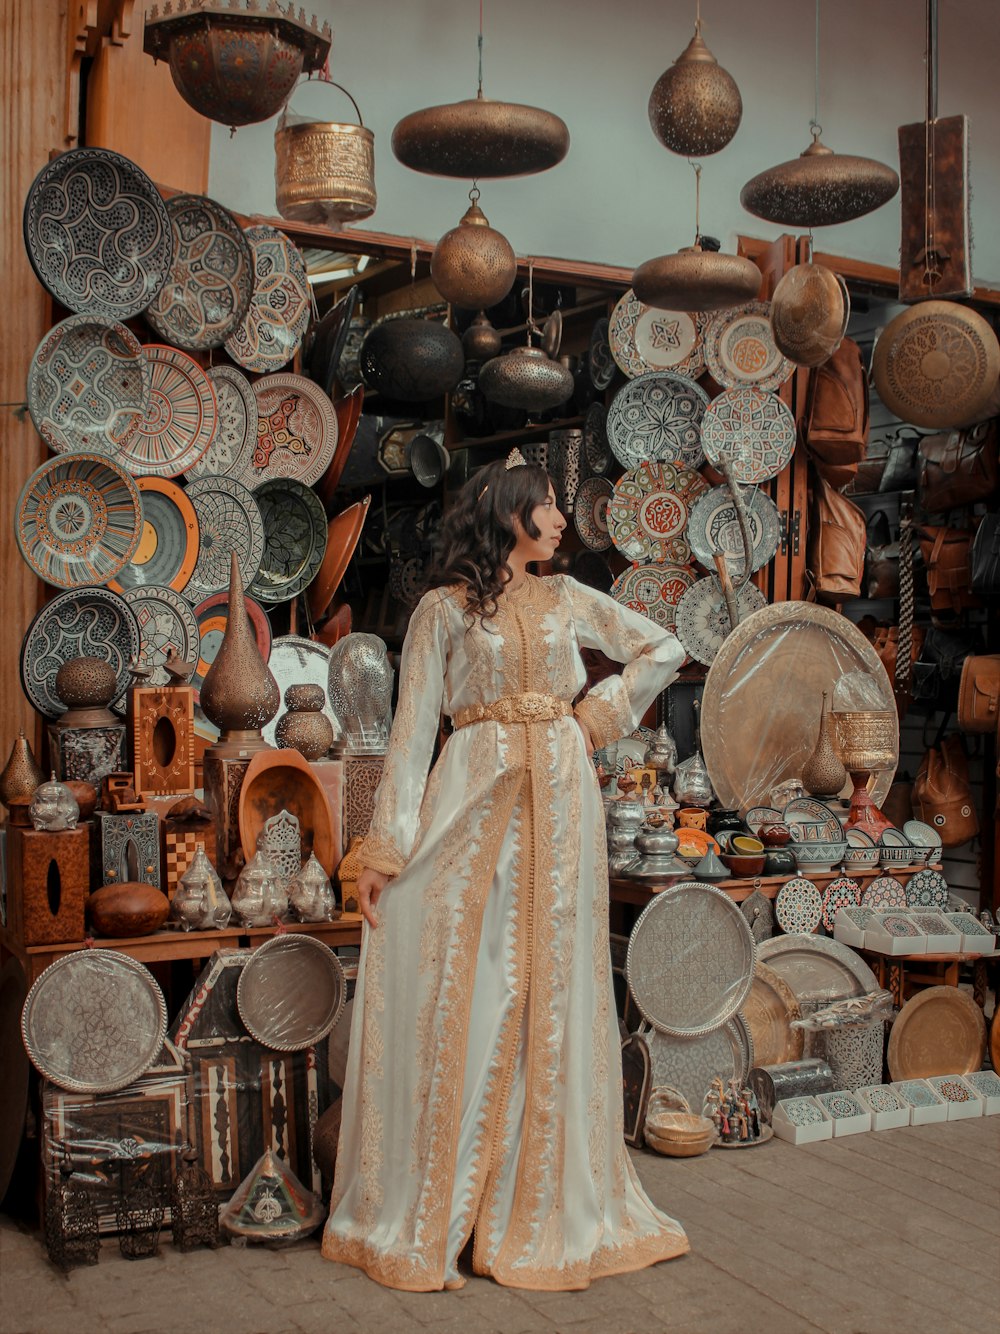 Eine Frau steht vor einer Keramikausstellung